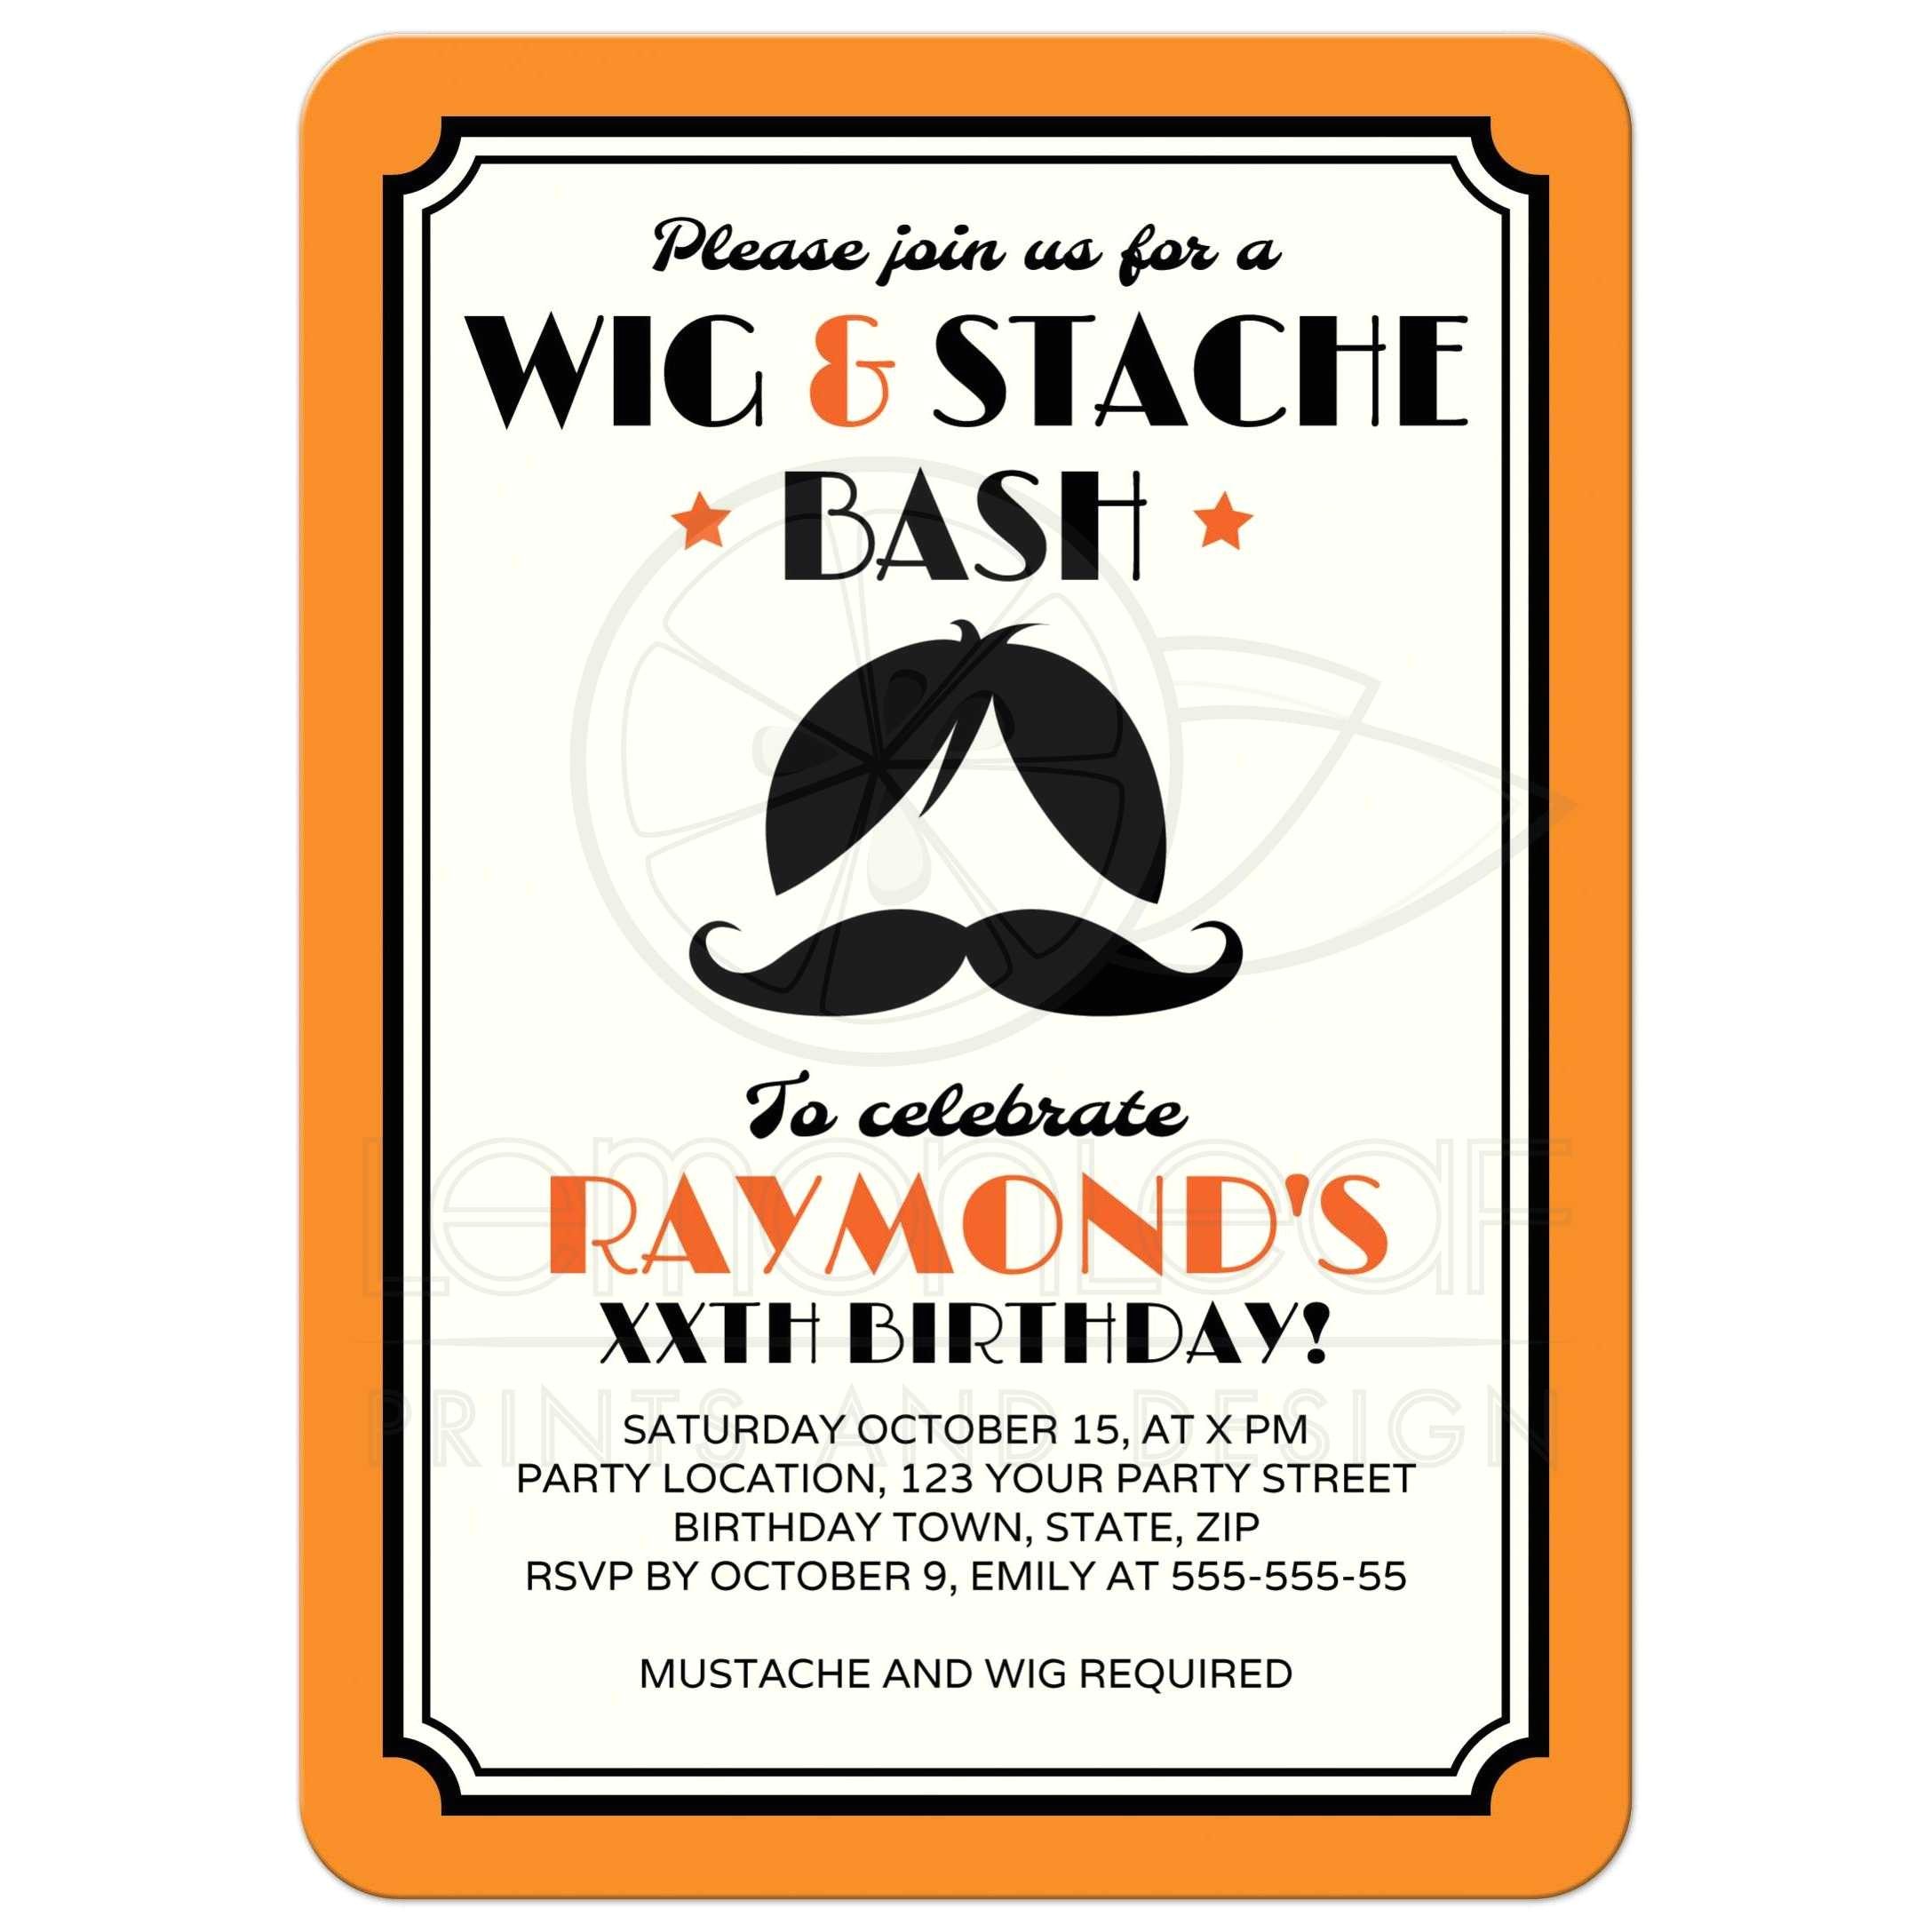 retro wig and mustache bash birthday party invitation orange black